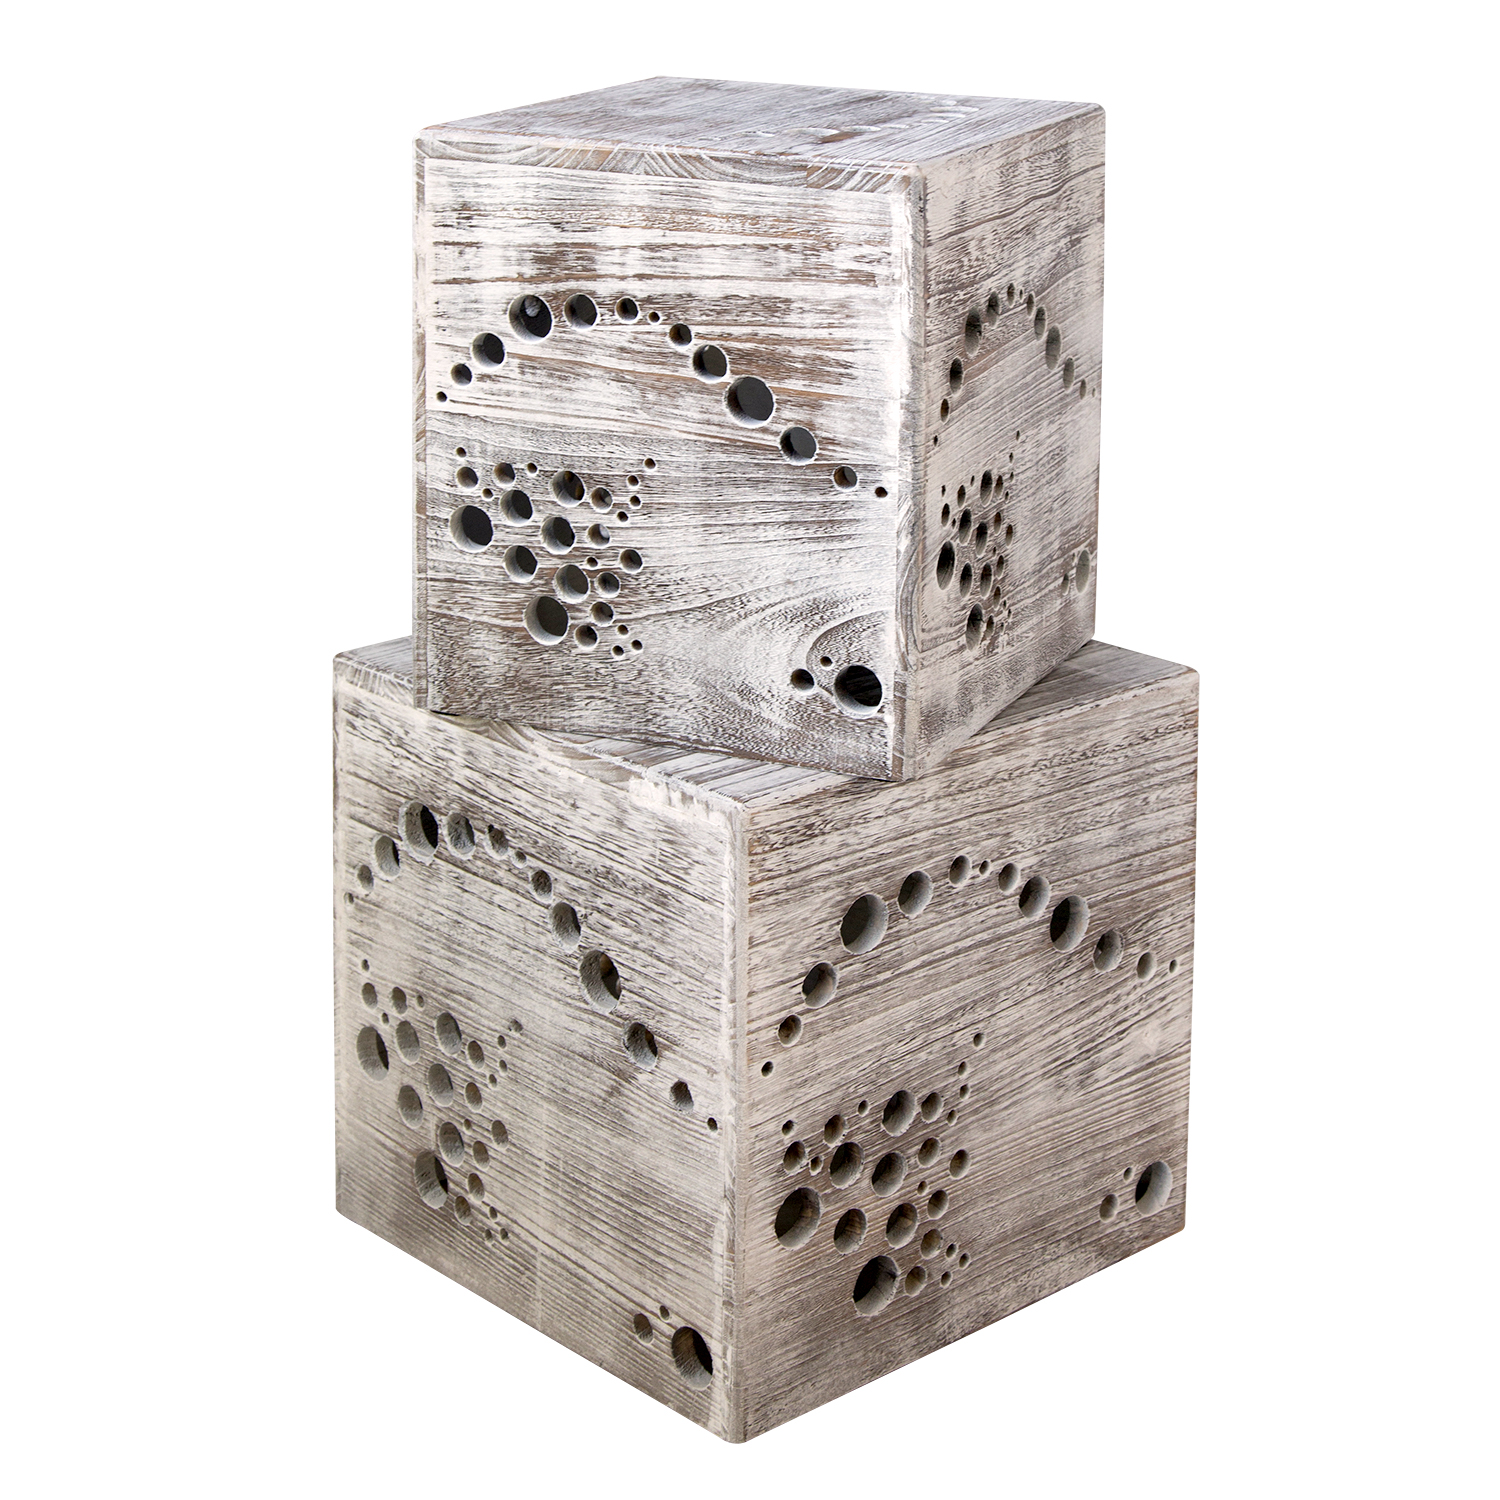 Hocker Beistelltisch 2er set Holz Würfel Nachttisch grau Cube Couchtisch